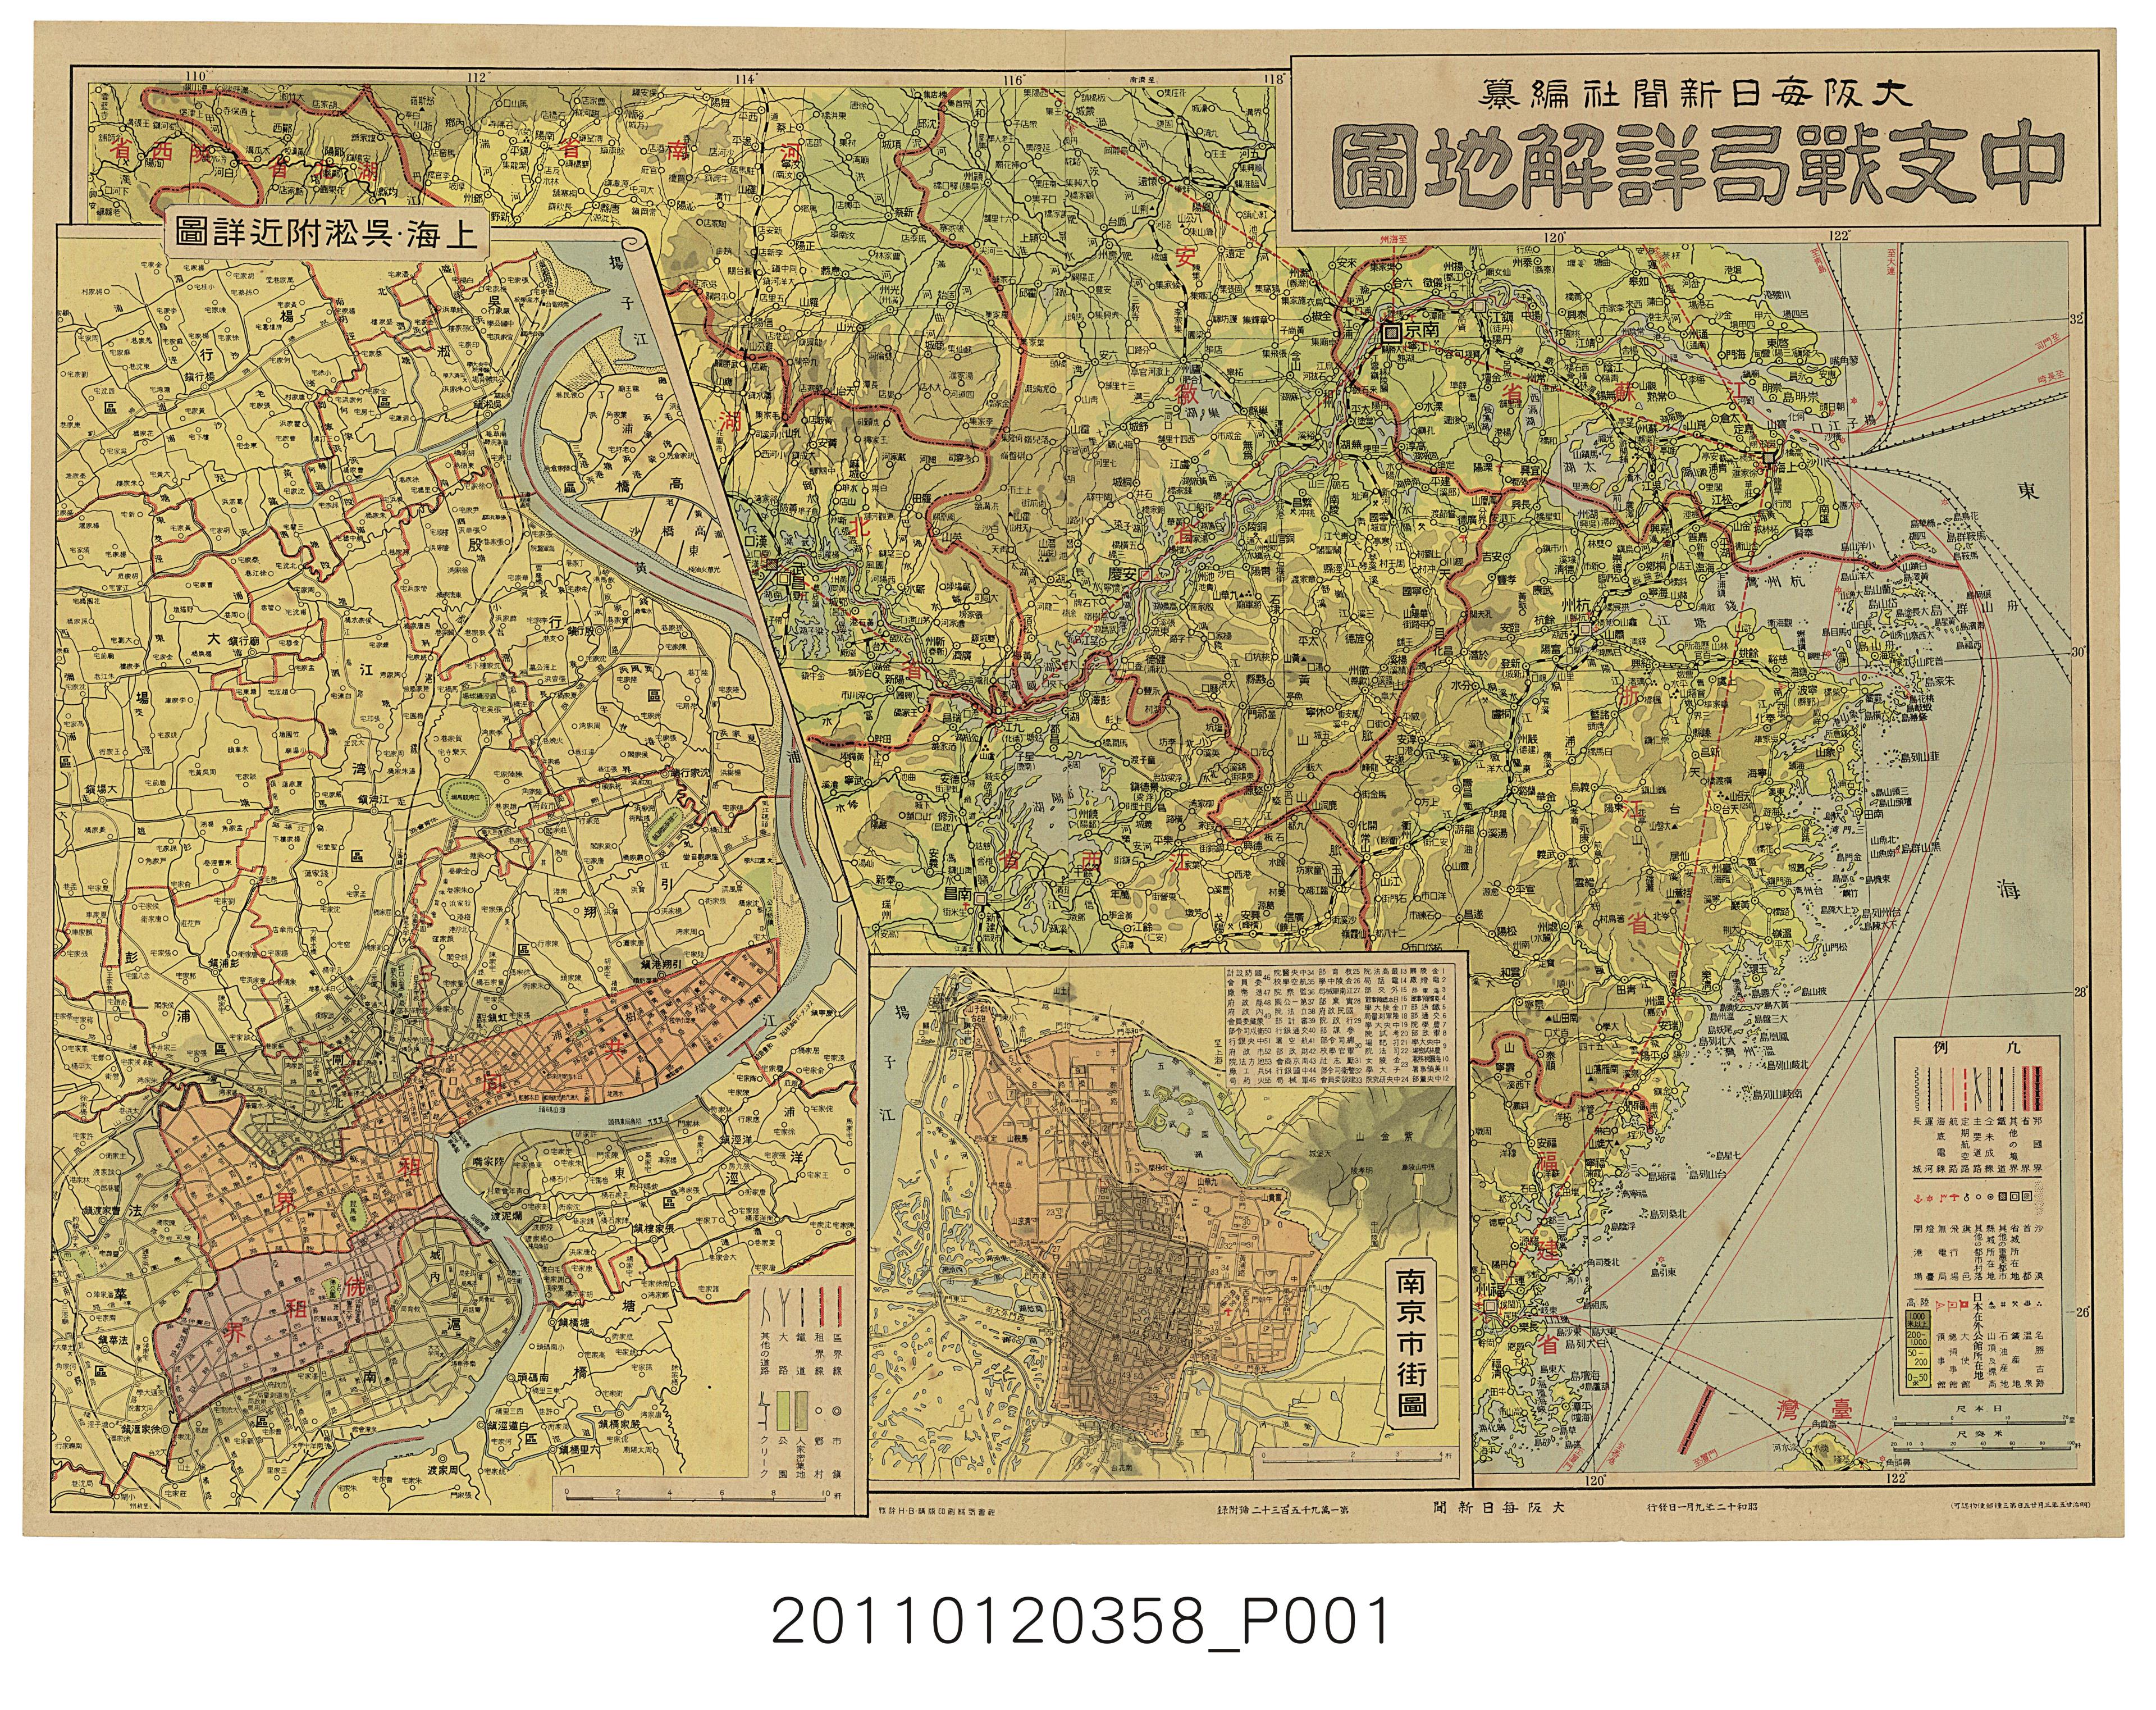 大阪每日新聞社〈中支戰局詳解地圖〉 (共1張)